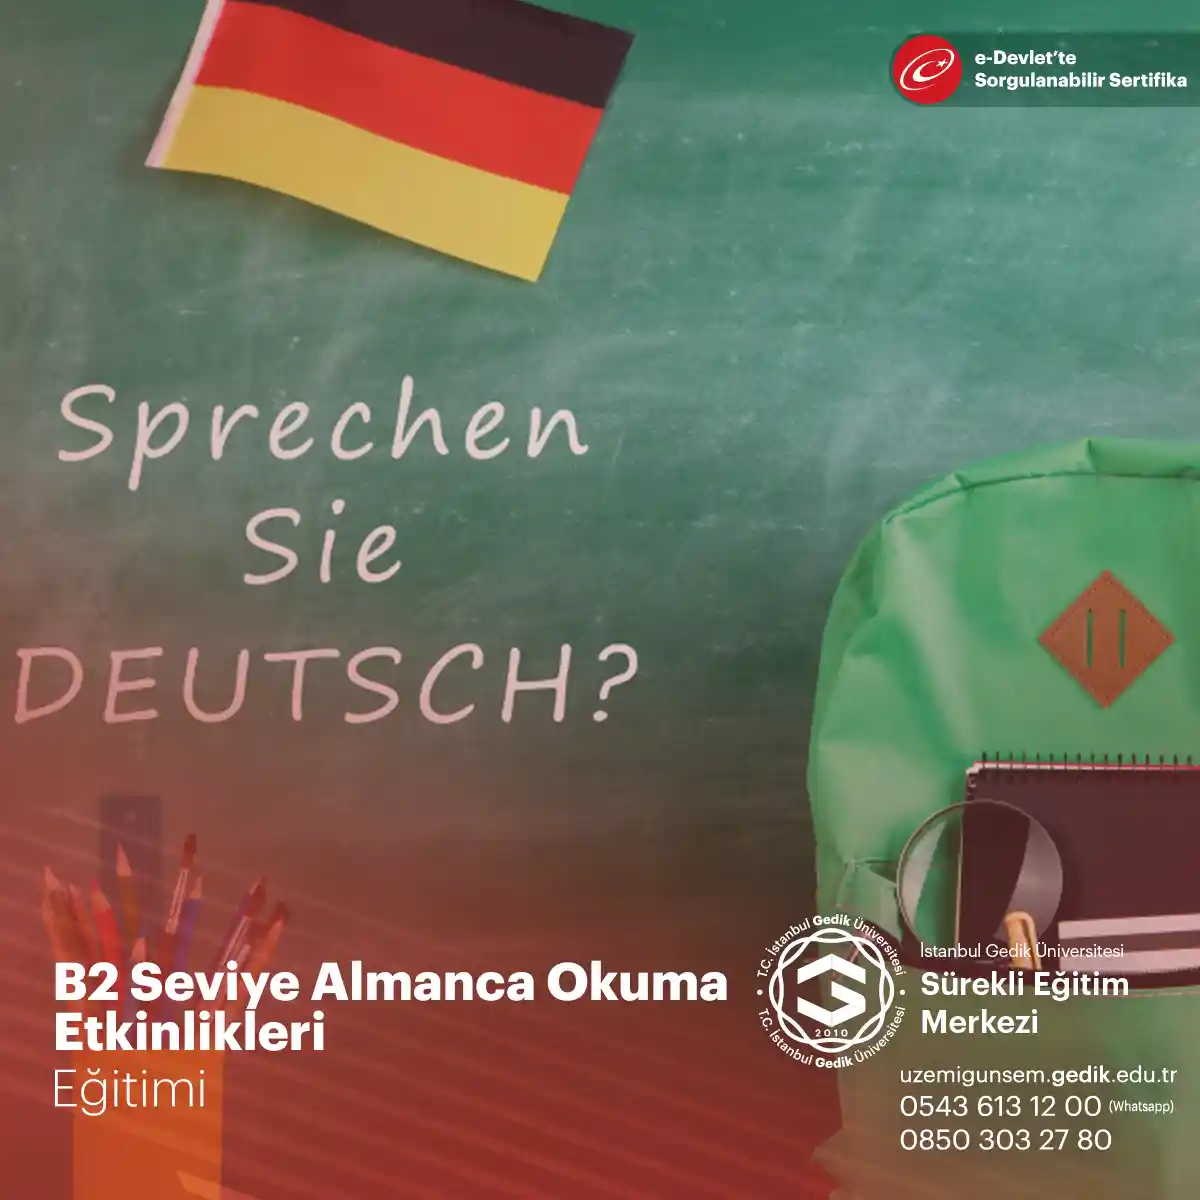 B2 Seviye Almanca Okuma Etkinlikleri Eğitimi